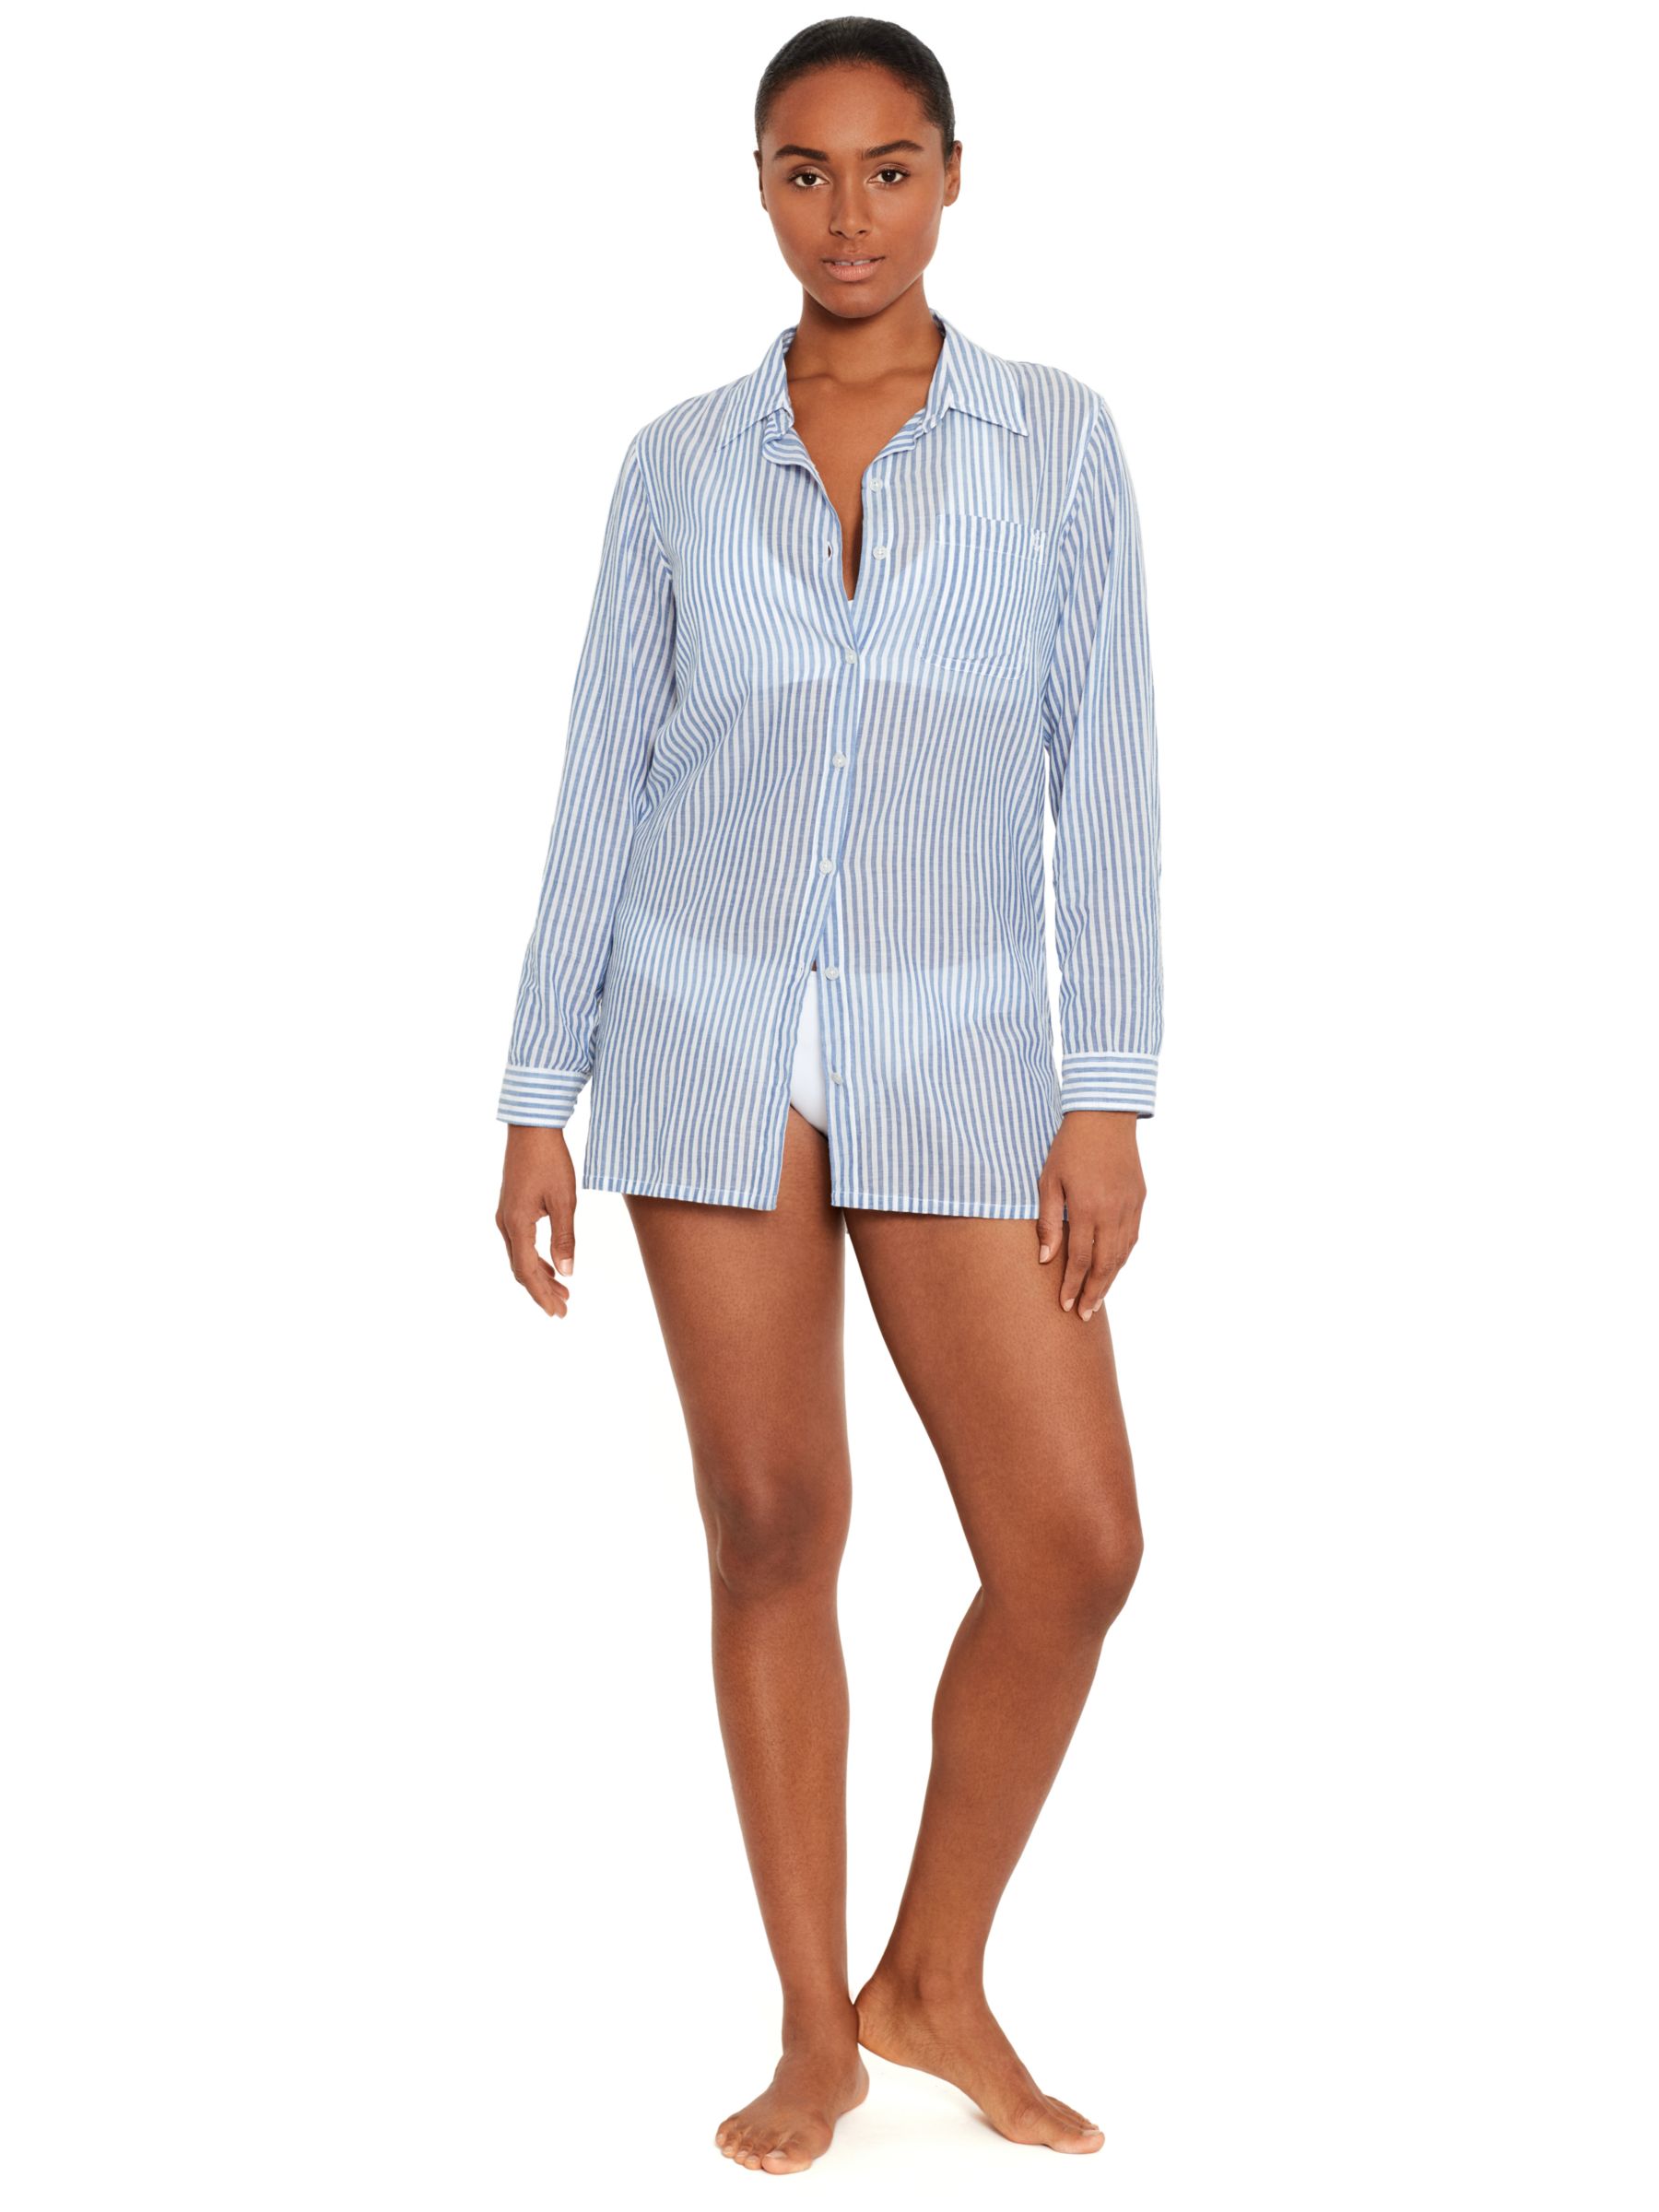 Рубашка оверсайз из хлопка с вышитым логотипом Lauren Camp Ralph Lauren, синий/мульти